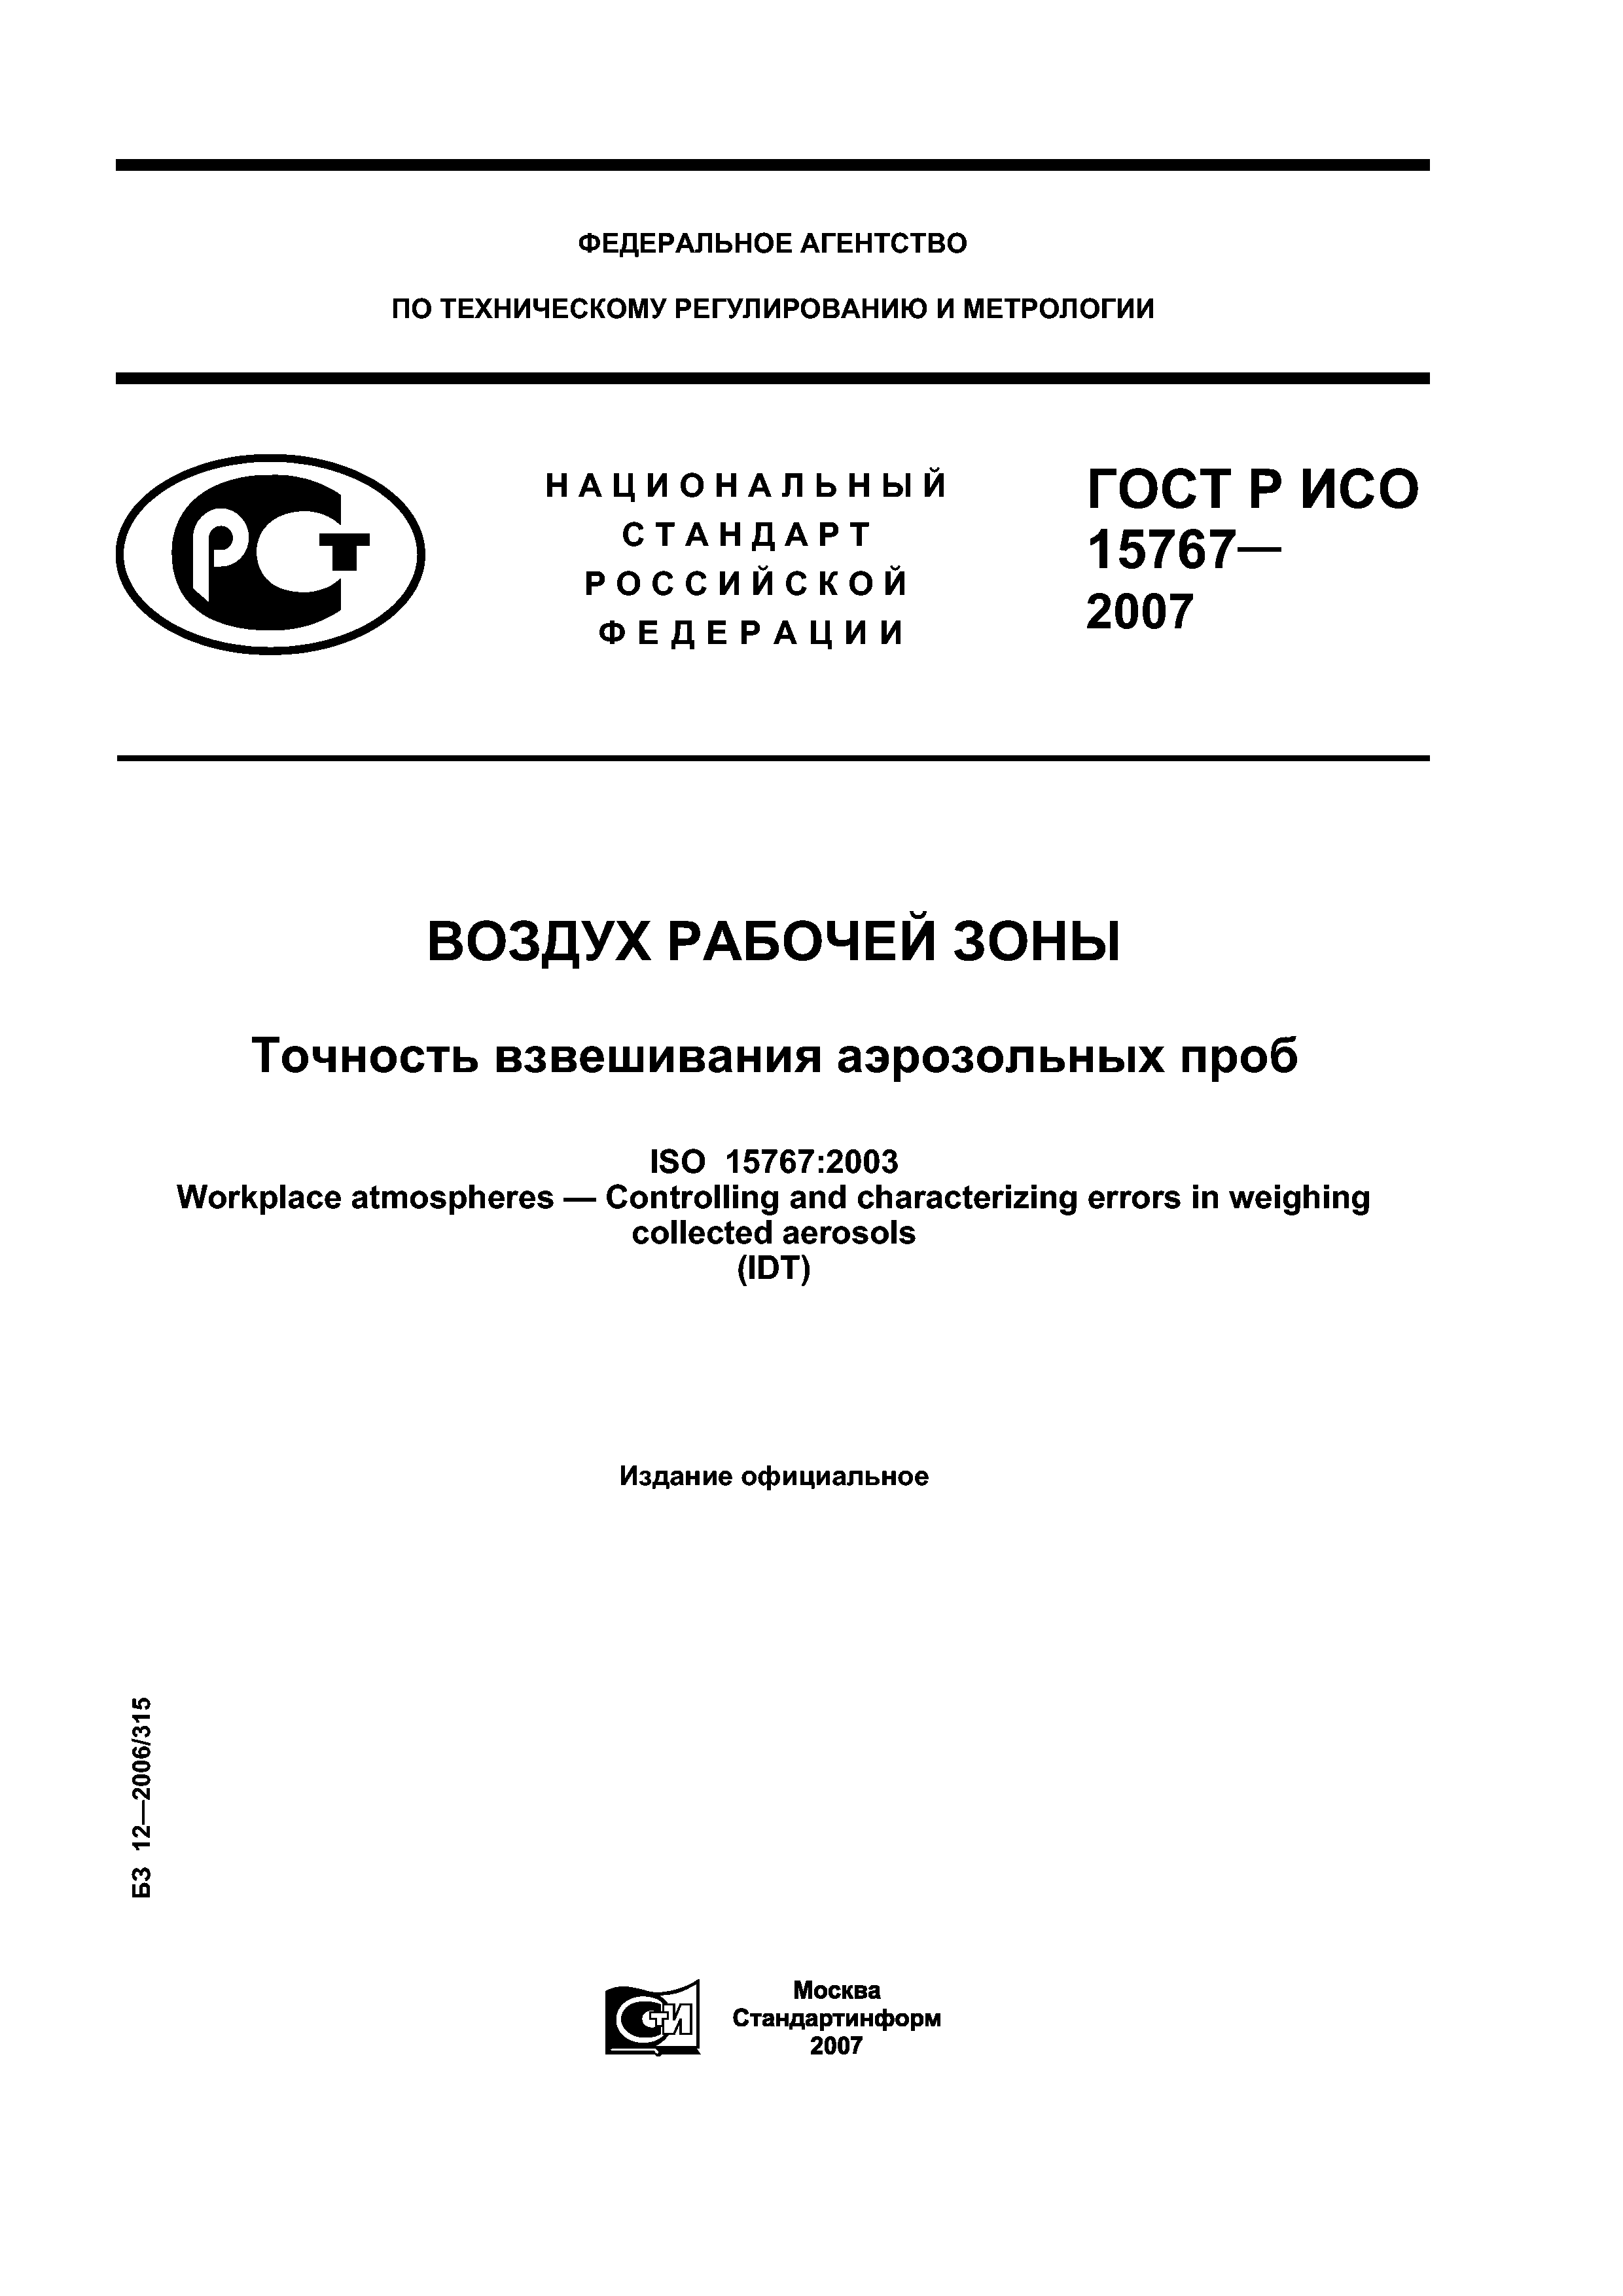 ГОСТ Р ИСО 15767-2007